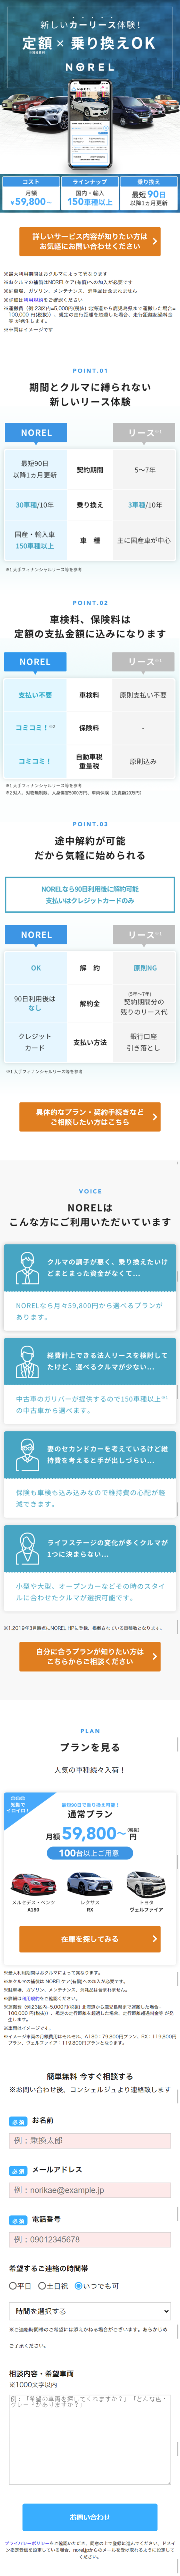 NOREL_sp_1